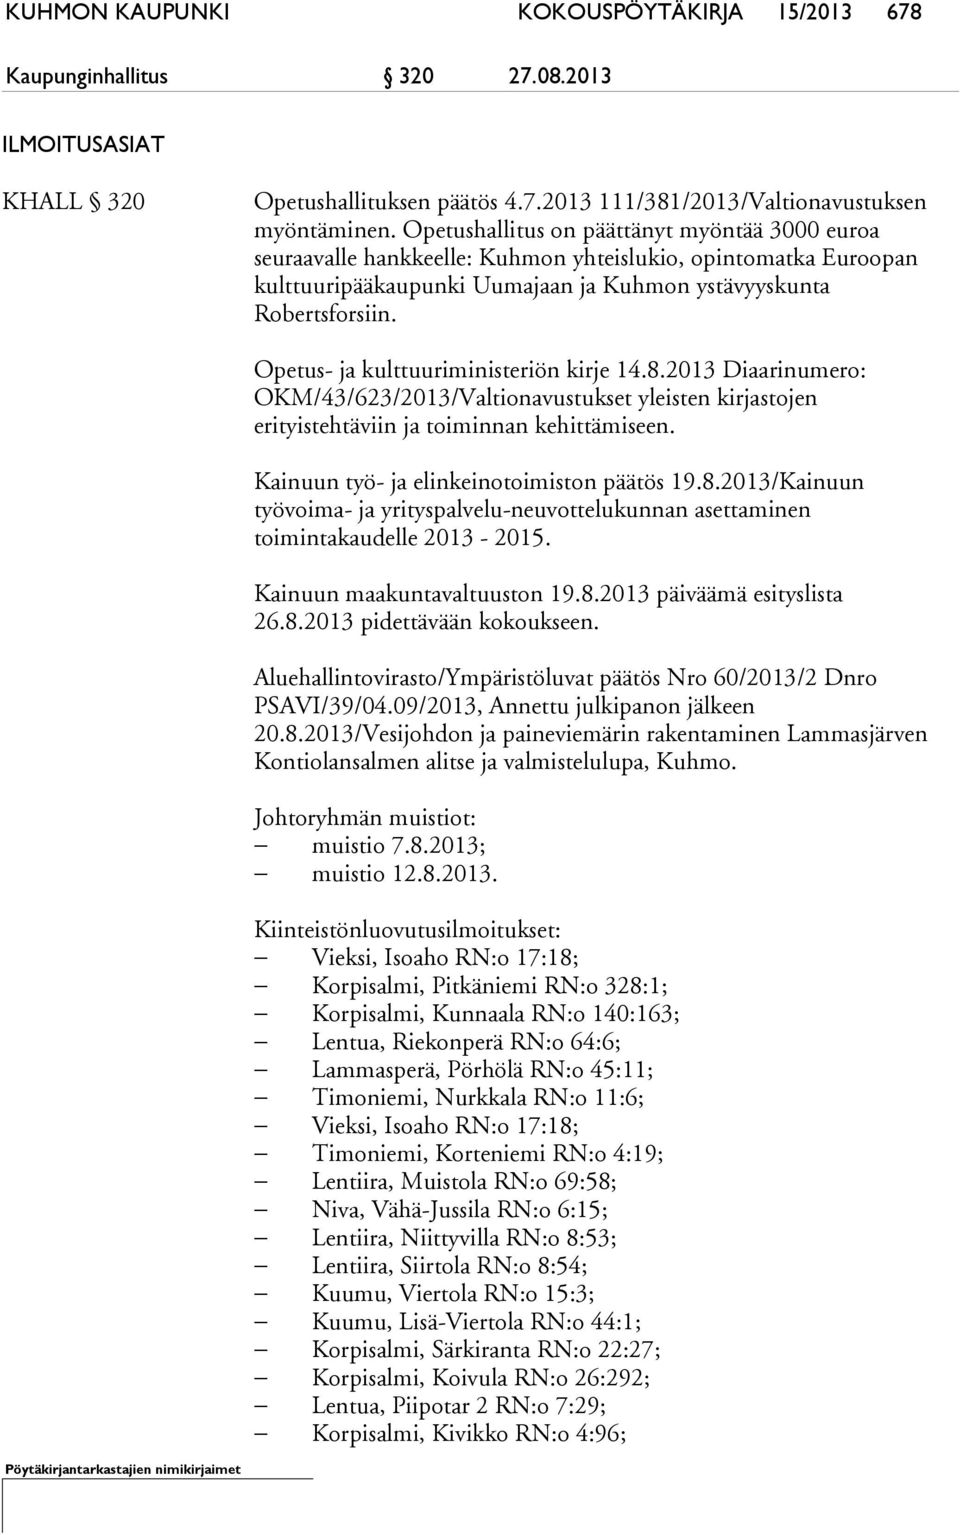 Opetus- ja kulttuuriministeriön kirje 14.8.2013 Diaarinumero: OKM/43/623/2013/Valtionavustukset yleisten kirjastojen erityistehtäviin ja toiminnan kehittämiseen.